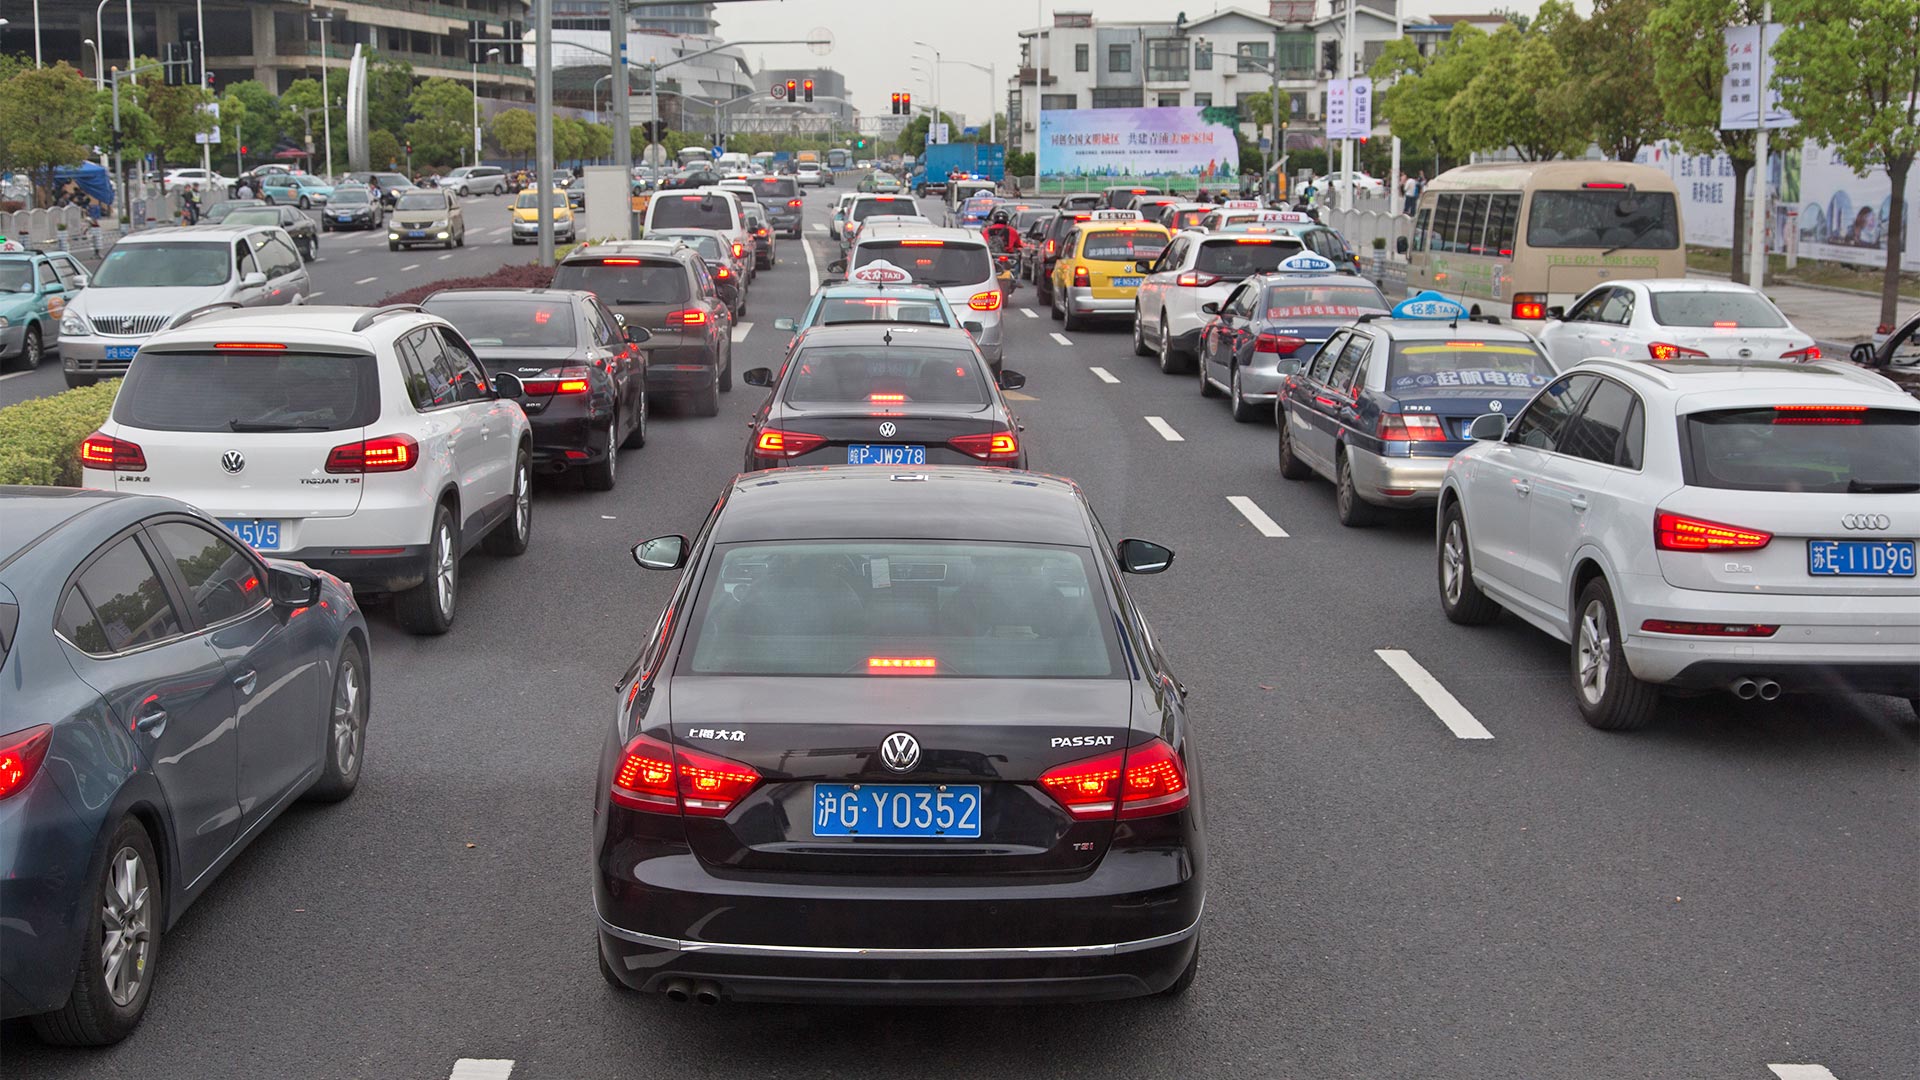 VW- und Audi-Fahrzeuge im Staßenverkehr, Shanghai | picture alliance / Friso Gentsch